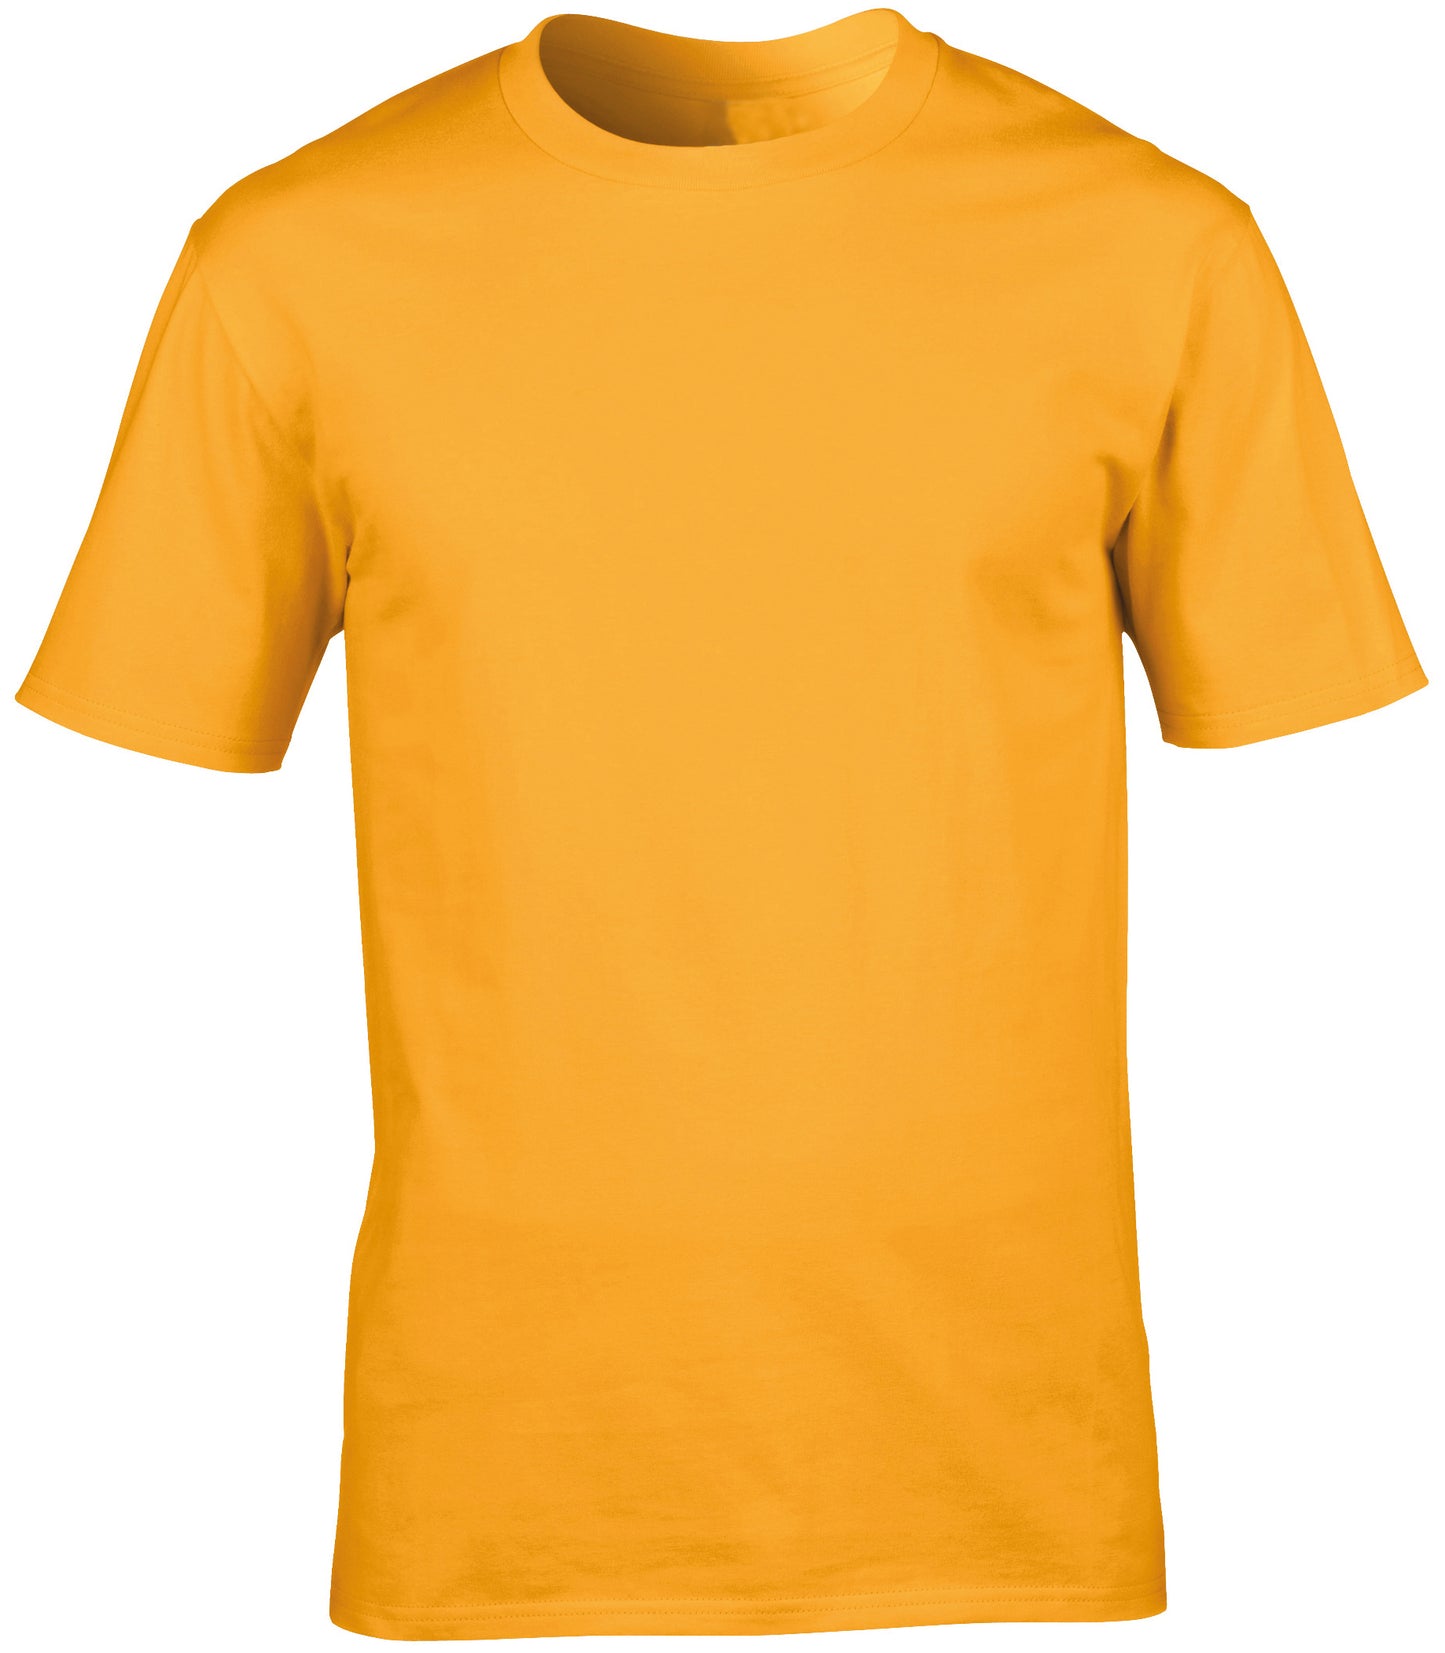 Personalised Unisex T-shirt